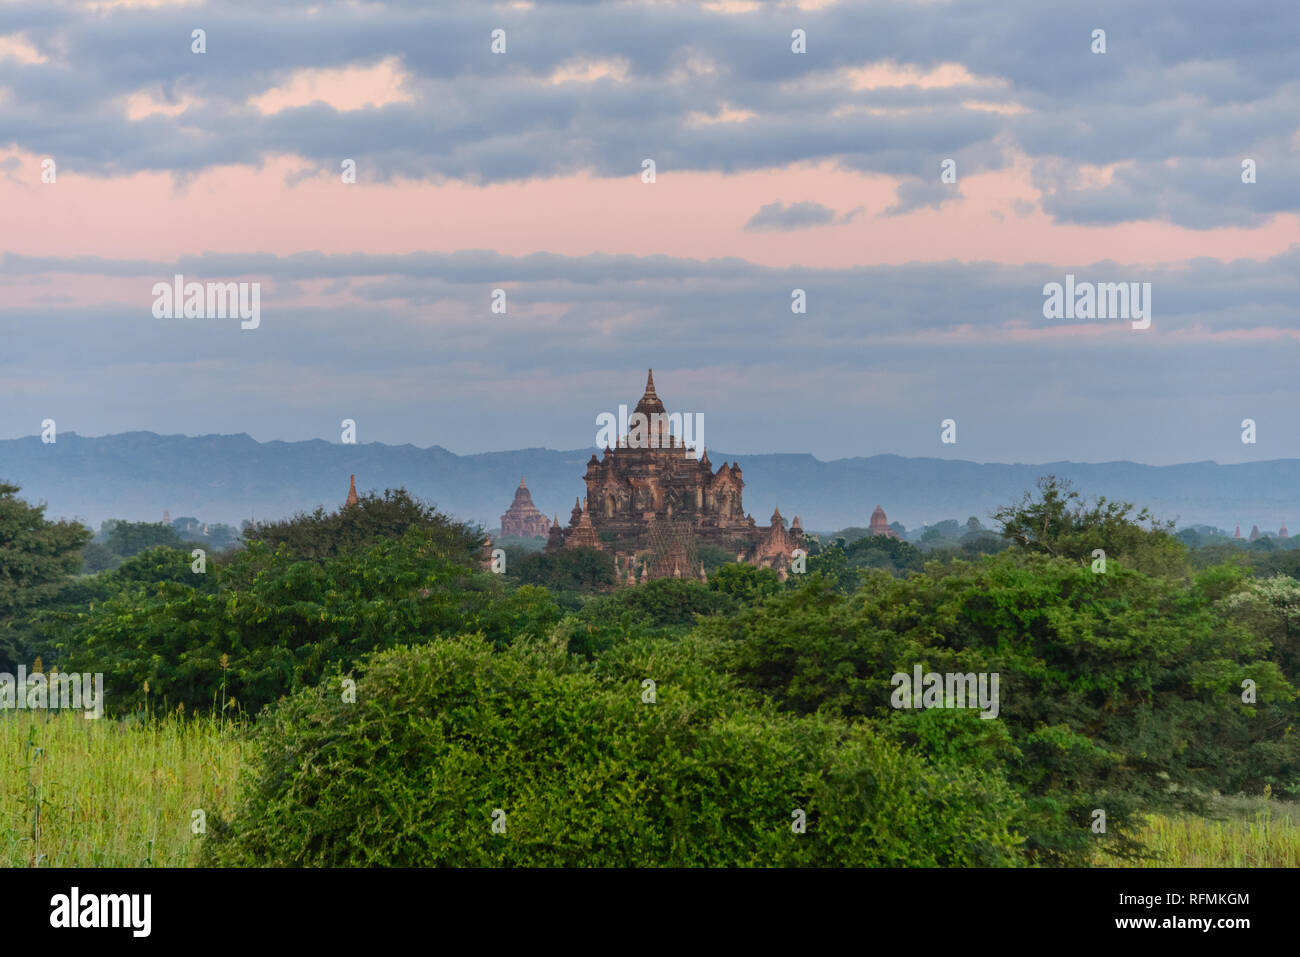 Bagan - ancient capital of Myanmar Stock Photo